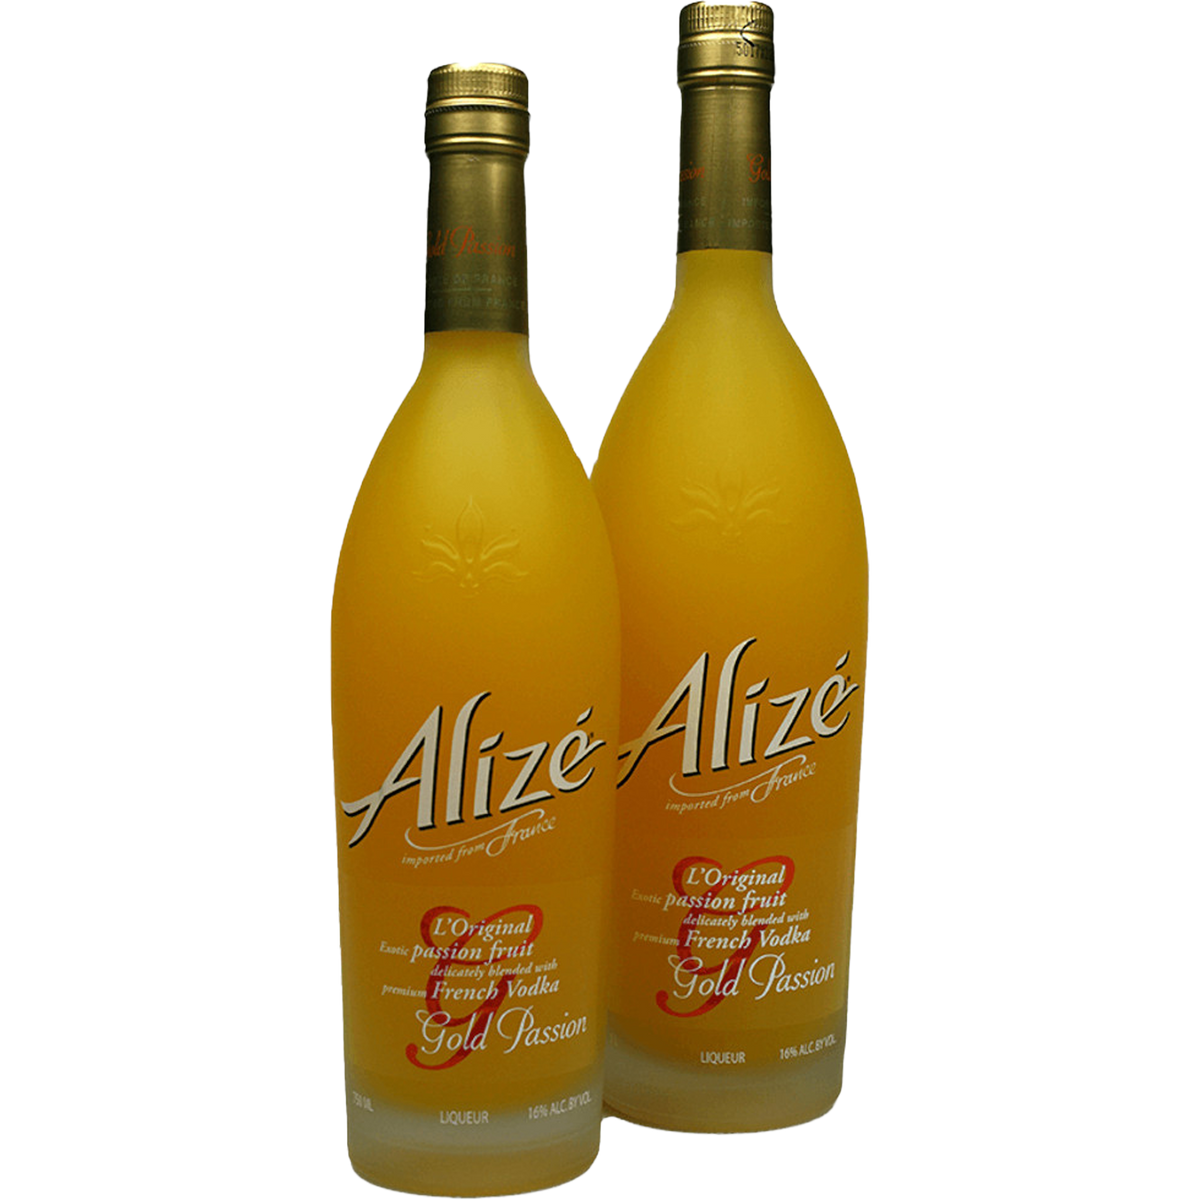 Alize Bleu - 750 ml